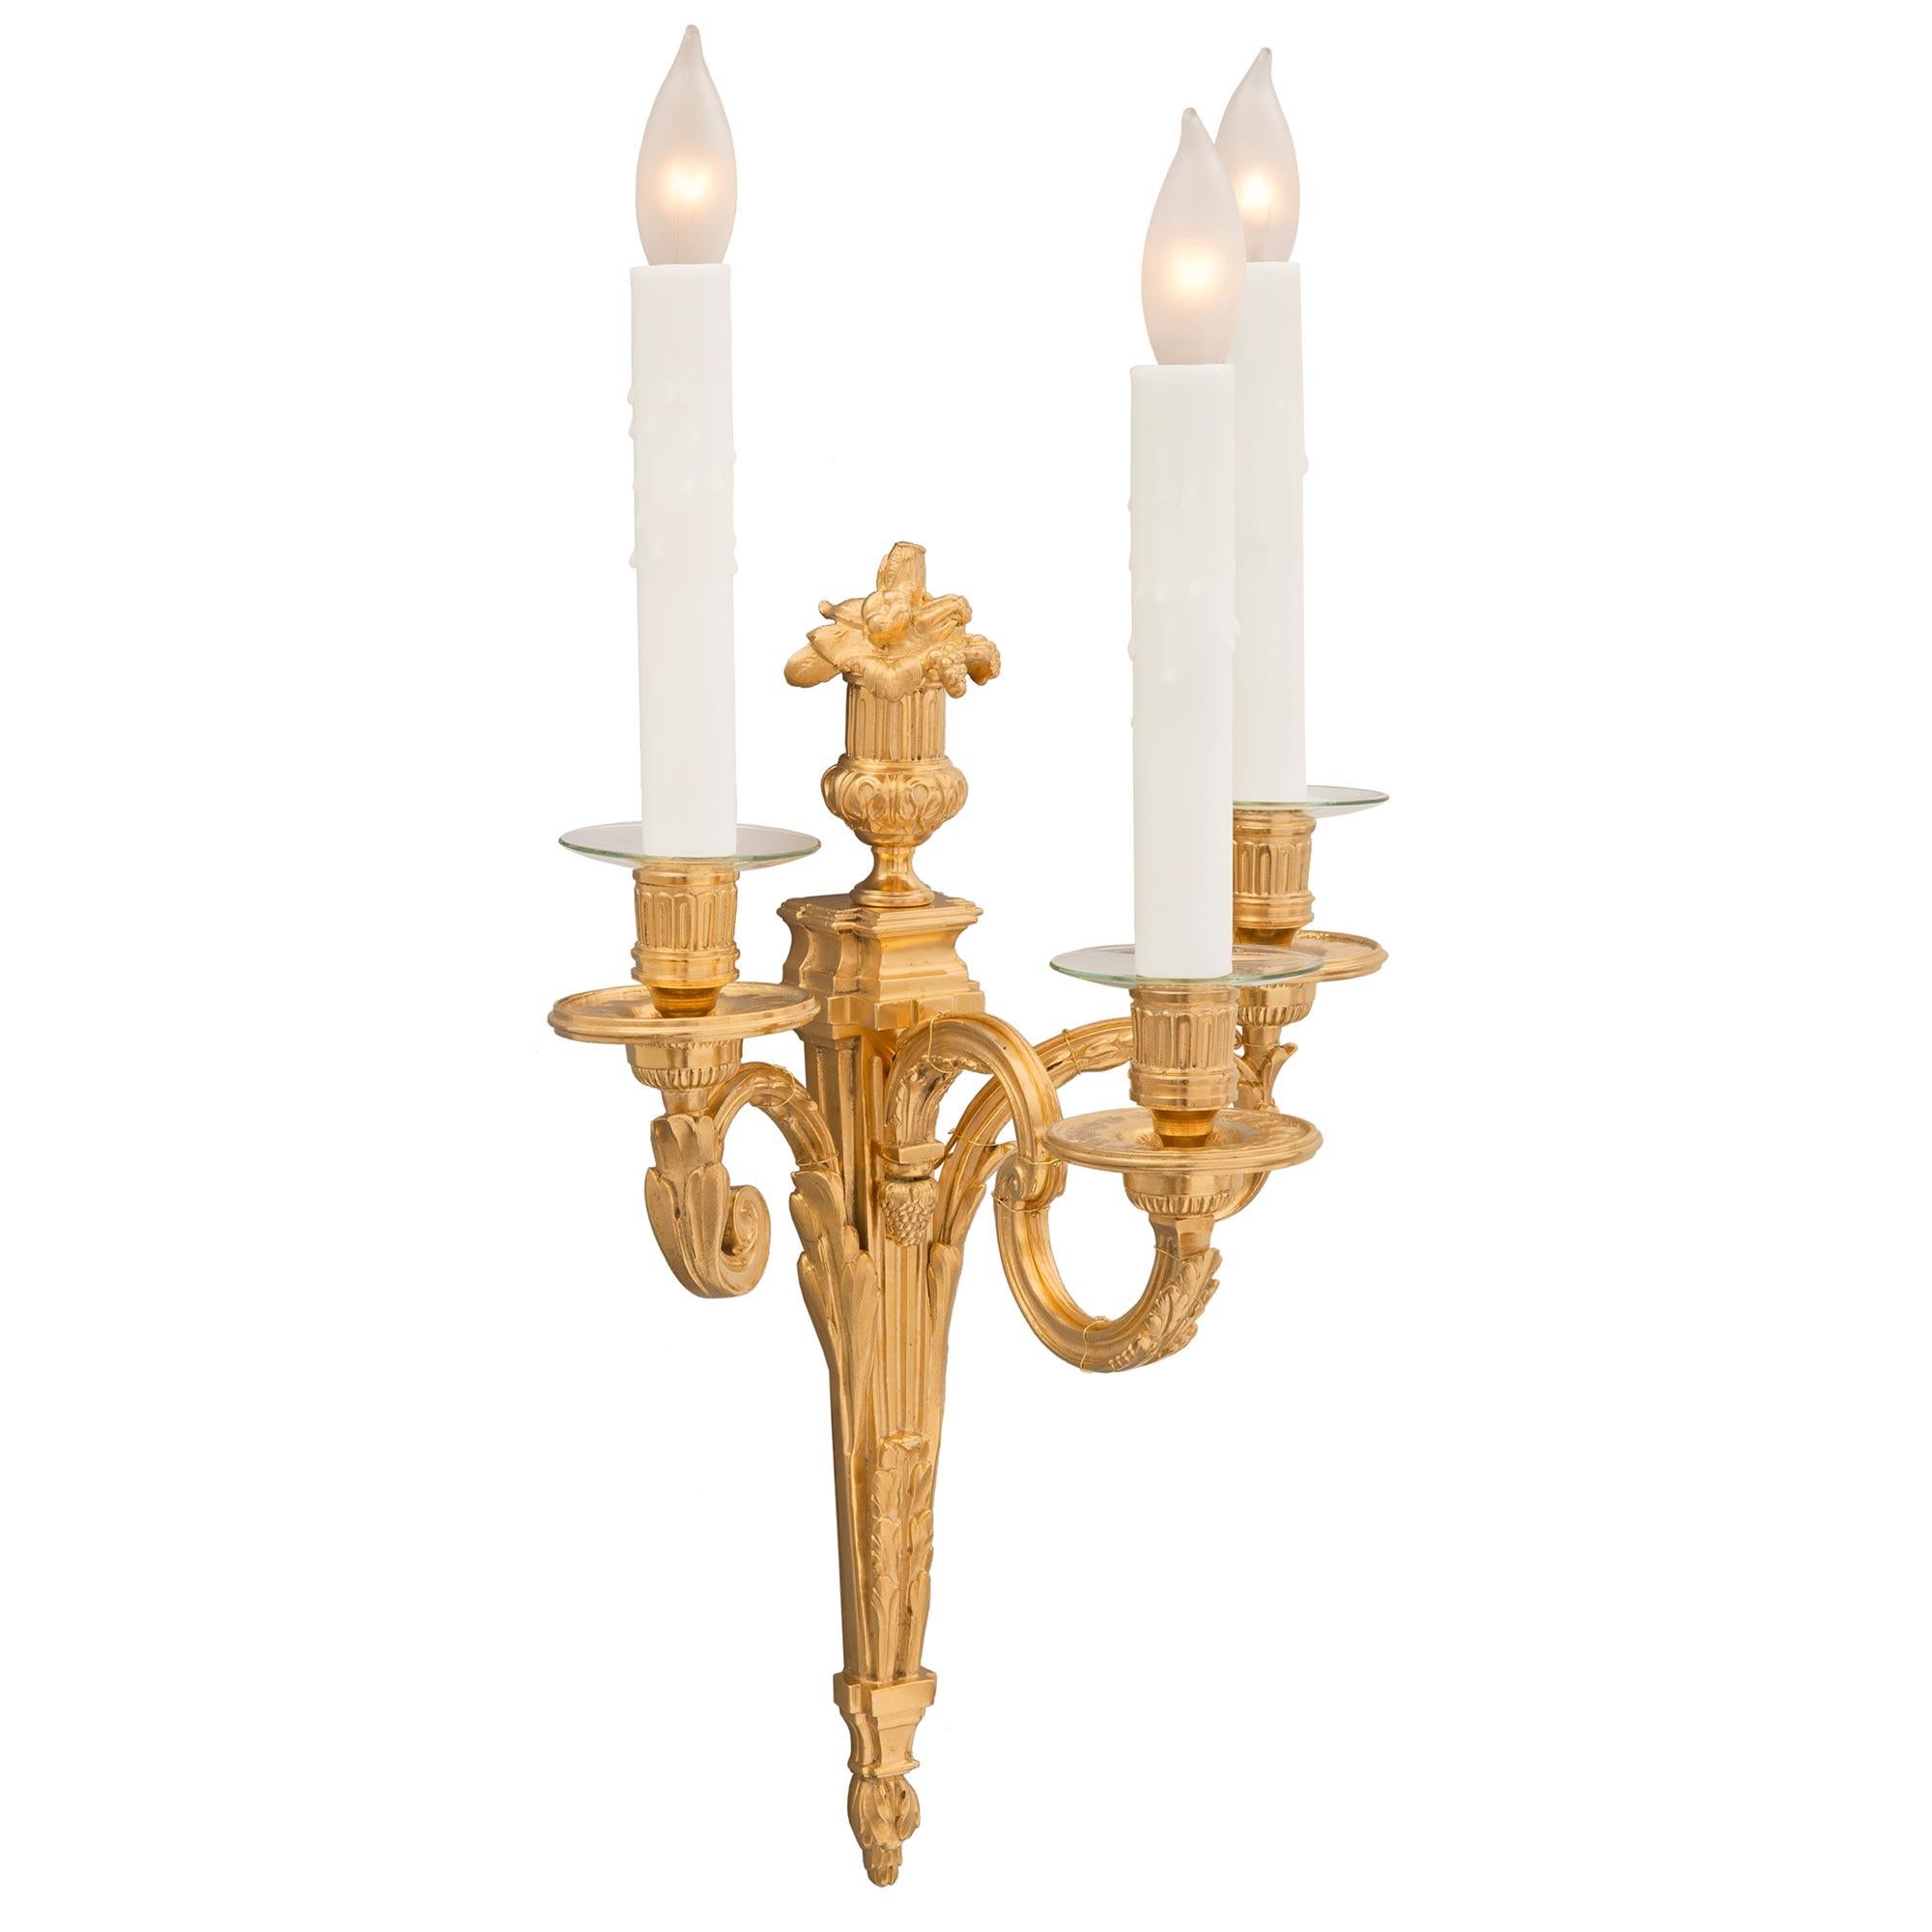 Paire d'appliques en bronze doré de style Louis XVI du XIXe siècle, extrêmement élégante et de grande qualité. Chaque applique à trois bras est centrée par un fleuron inférieur richement ciselé, dans une finition satinée et brunie, sous le fut